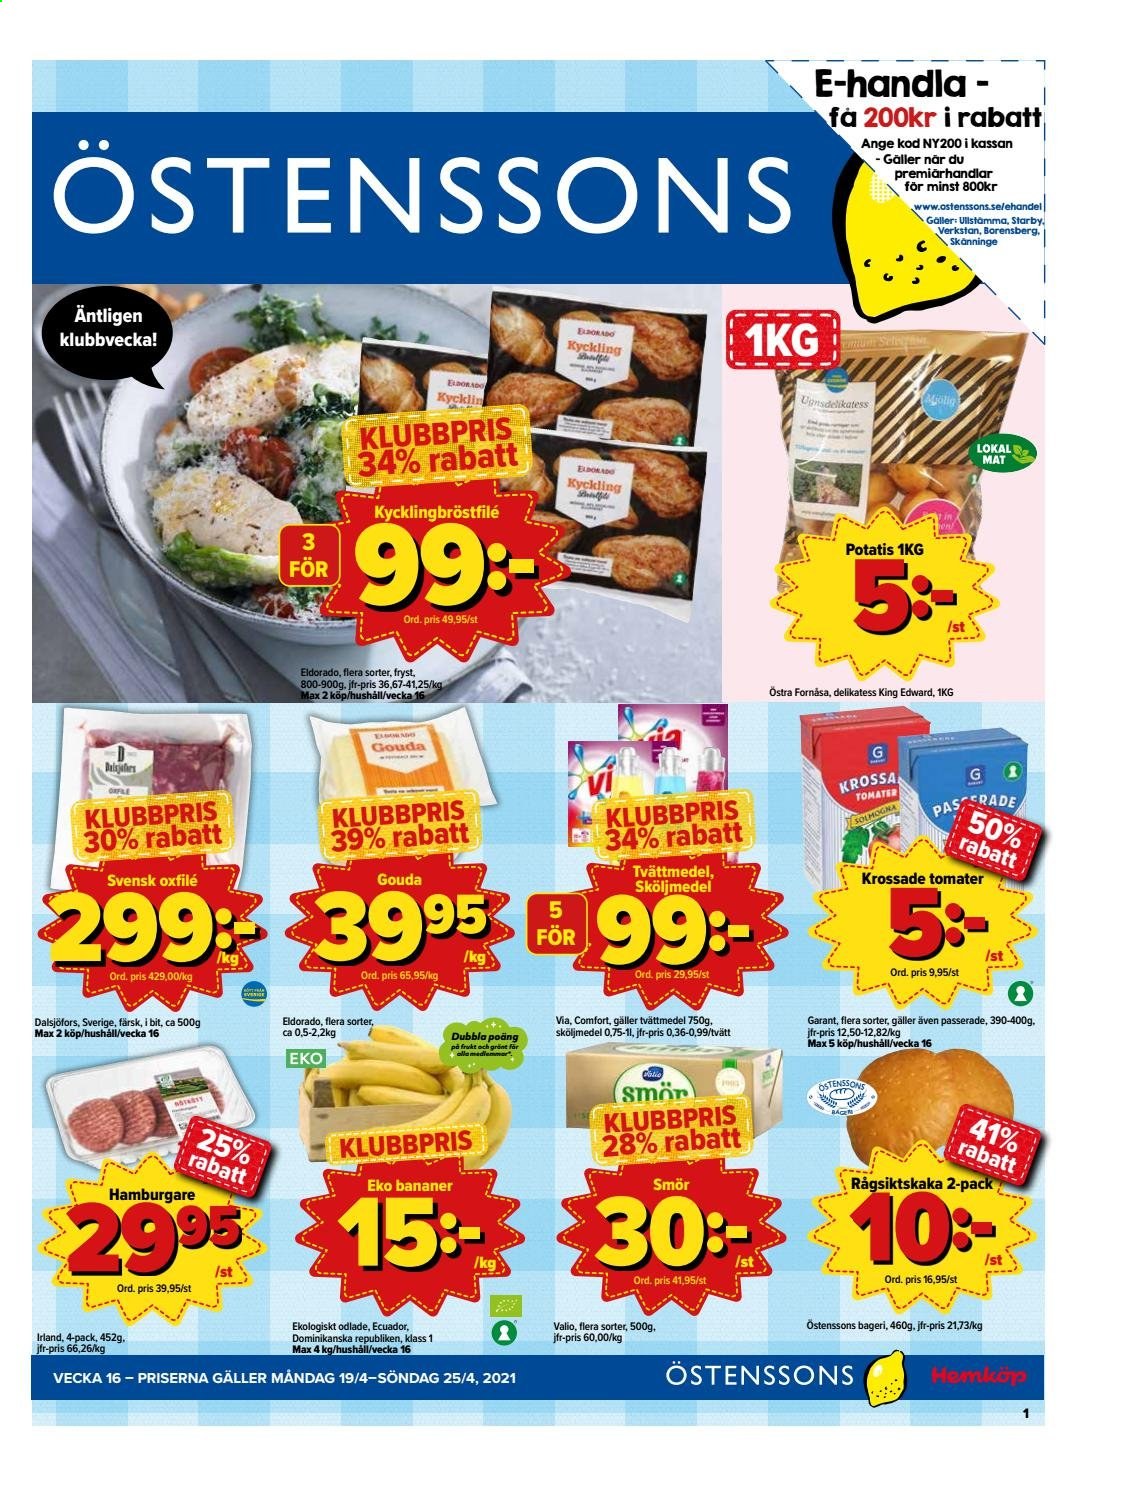 Östenssons reklamblad - 19/4 2021 - 25/4 2021.